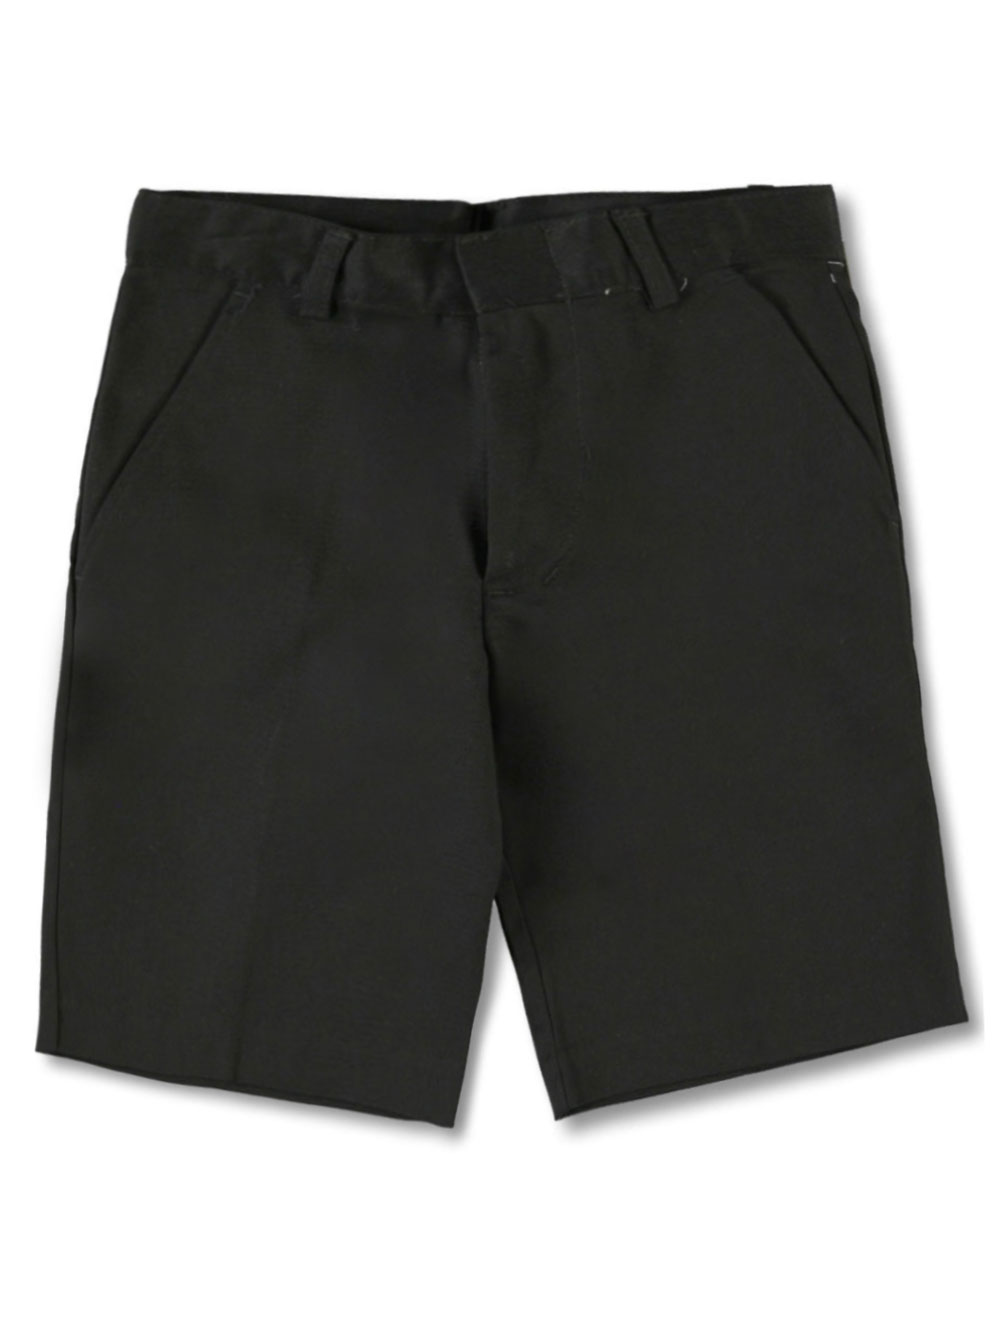 Black Shorts/Skorts